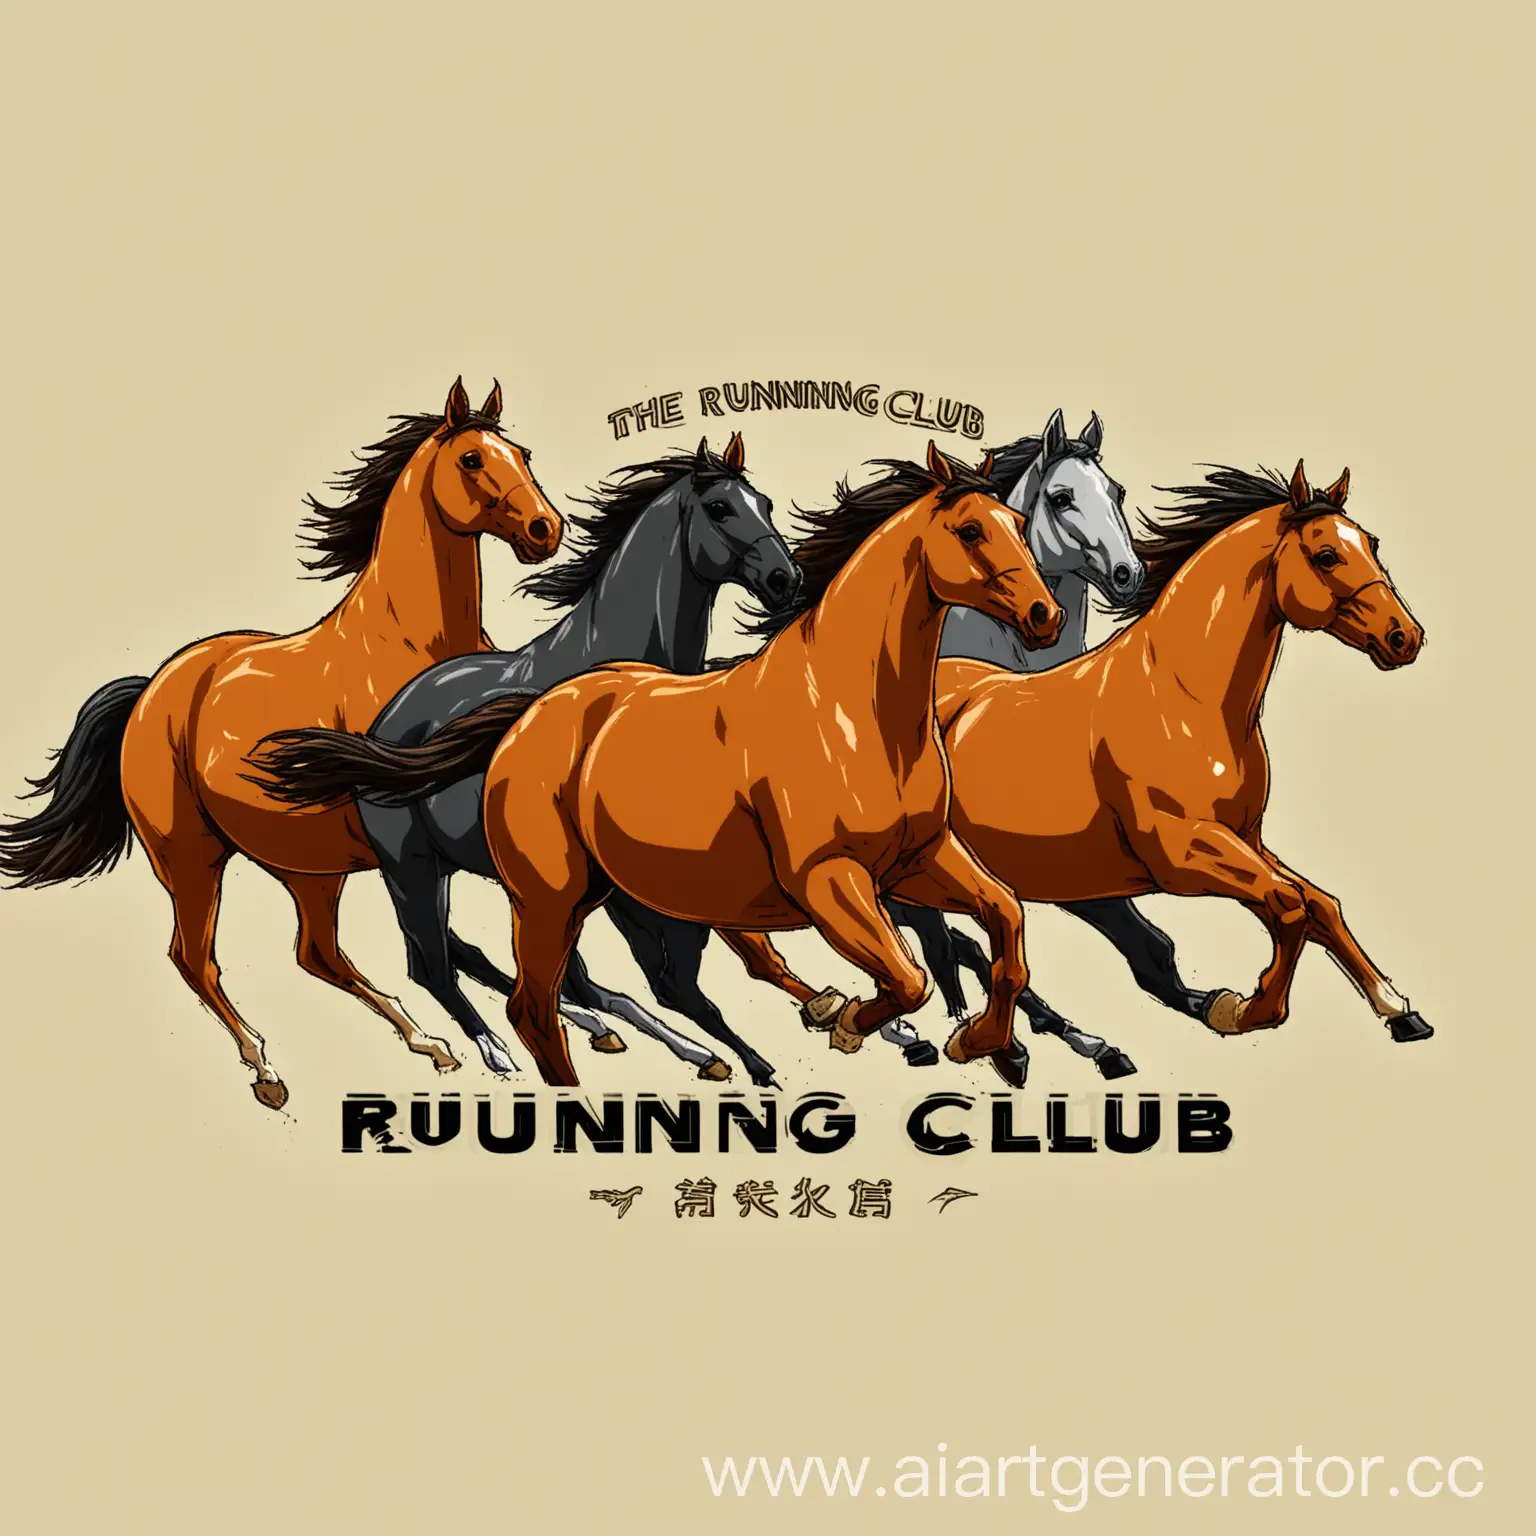 Логотип бегового клуба «Медленные лошади». Должны быть изображены толстые и ленивые лошади